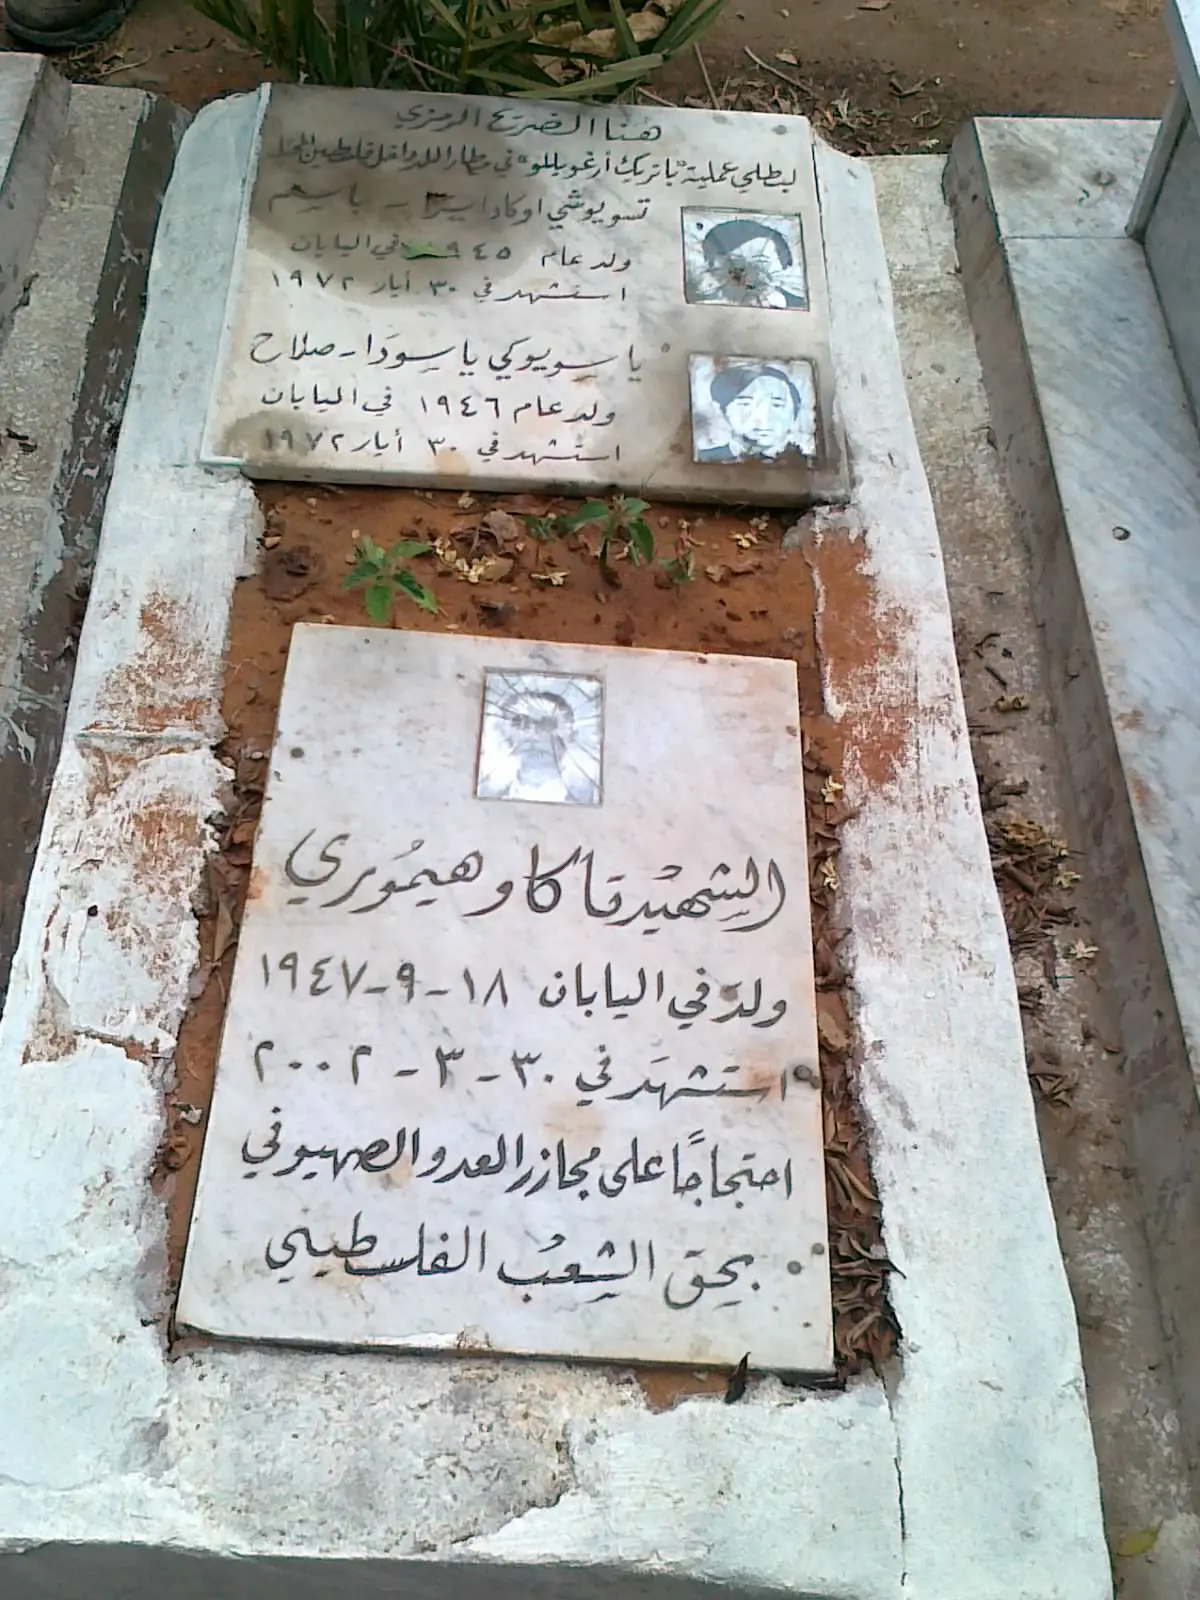 ضريح رمزي في مقبرة الشهداء بيروت لمقاتلي الجيش الأحمر الياباني الذين سقطوا في عملبة مطار اللد